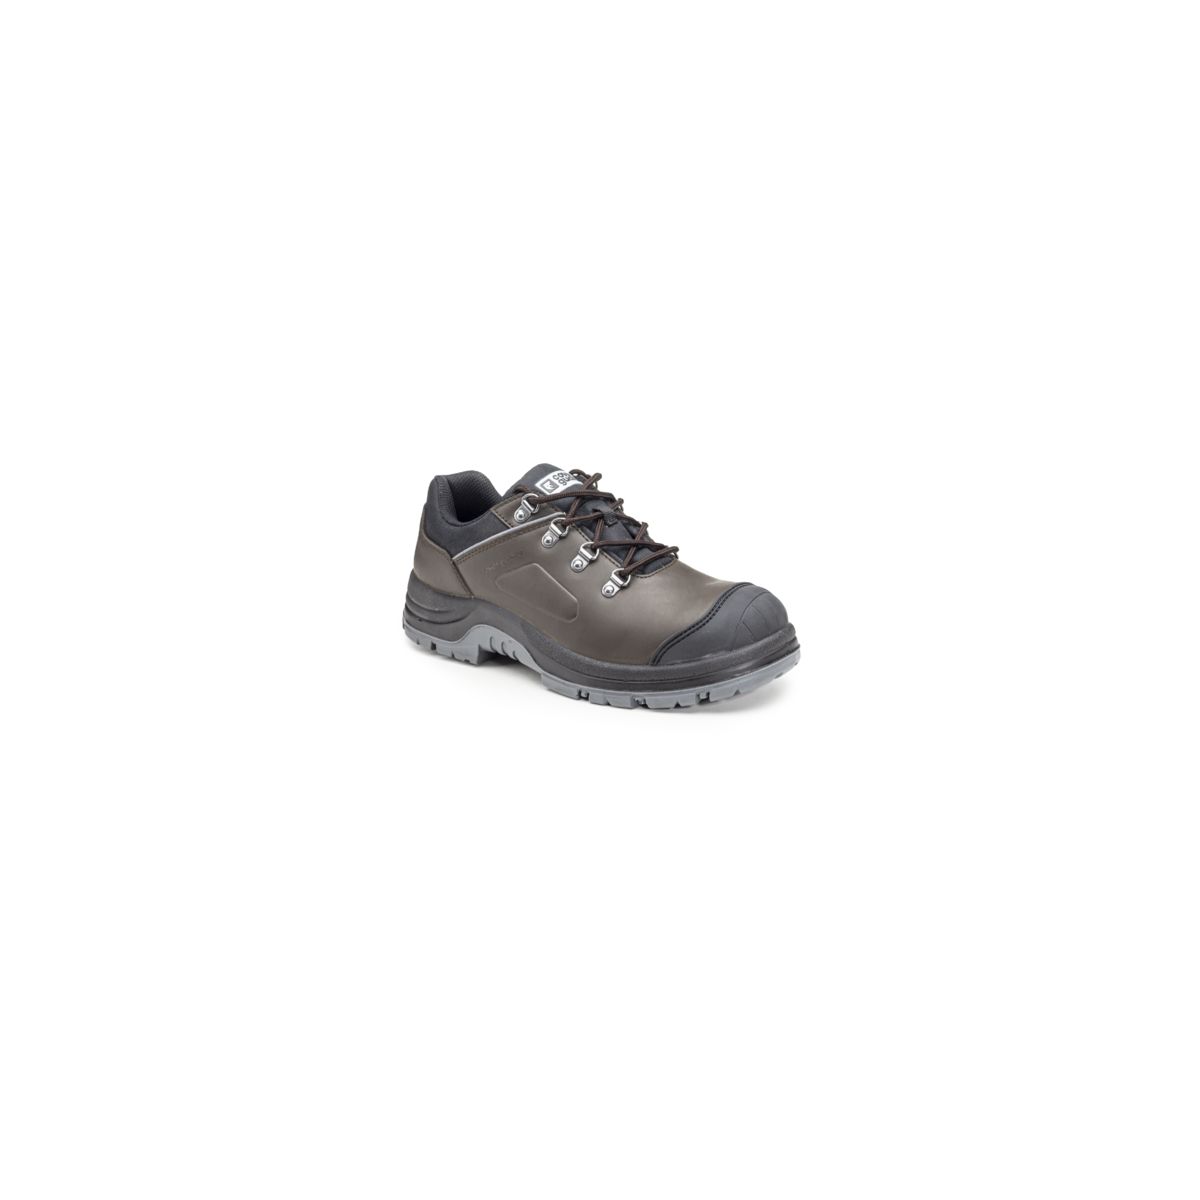 Chaussures de sécurité S3 FLINT Basse Croute de cuir Marron - COVERGUARD - Taille 45 0